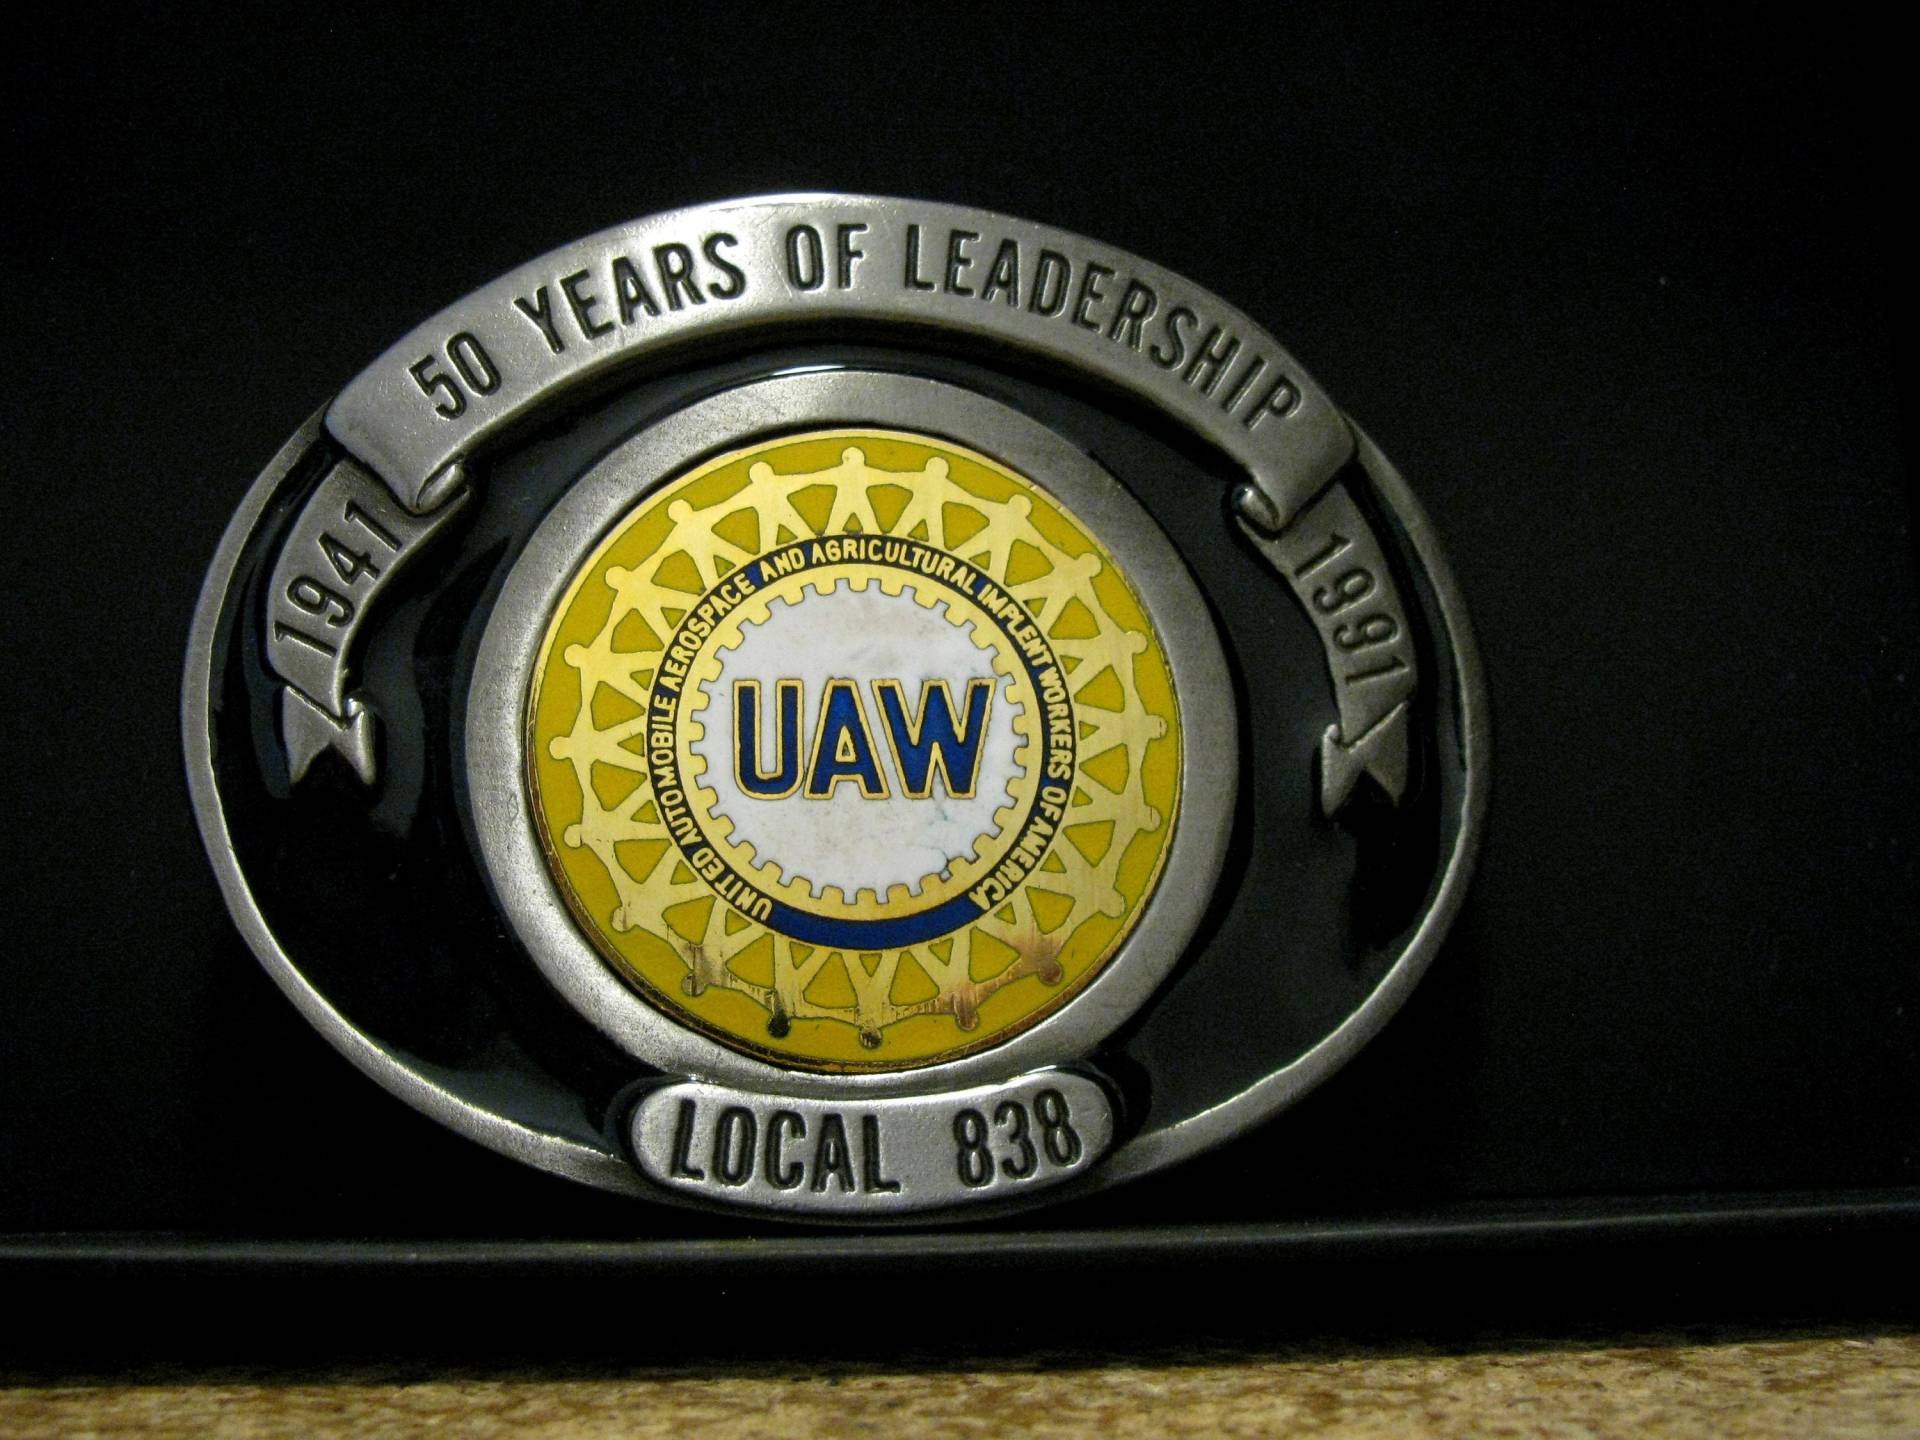 1991 John Deere Union Works Mitarbeiter Uaw Local 838 Limited Edition "50 Years Of Leadership" Zinn & Emaille Gürtelschnalle Jd von BeyerTractor